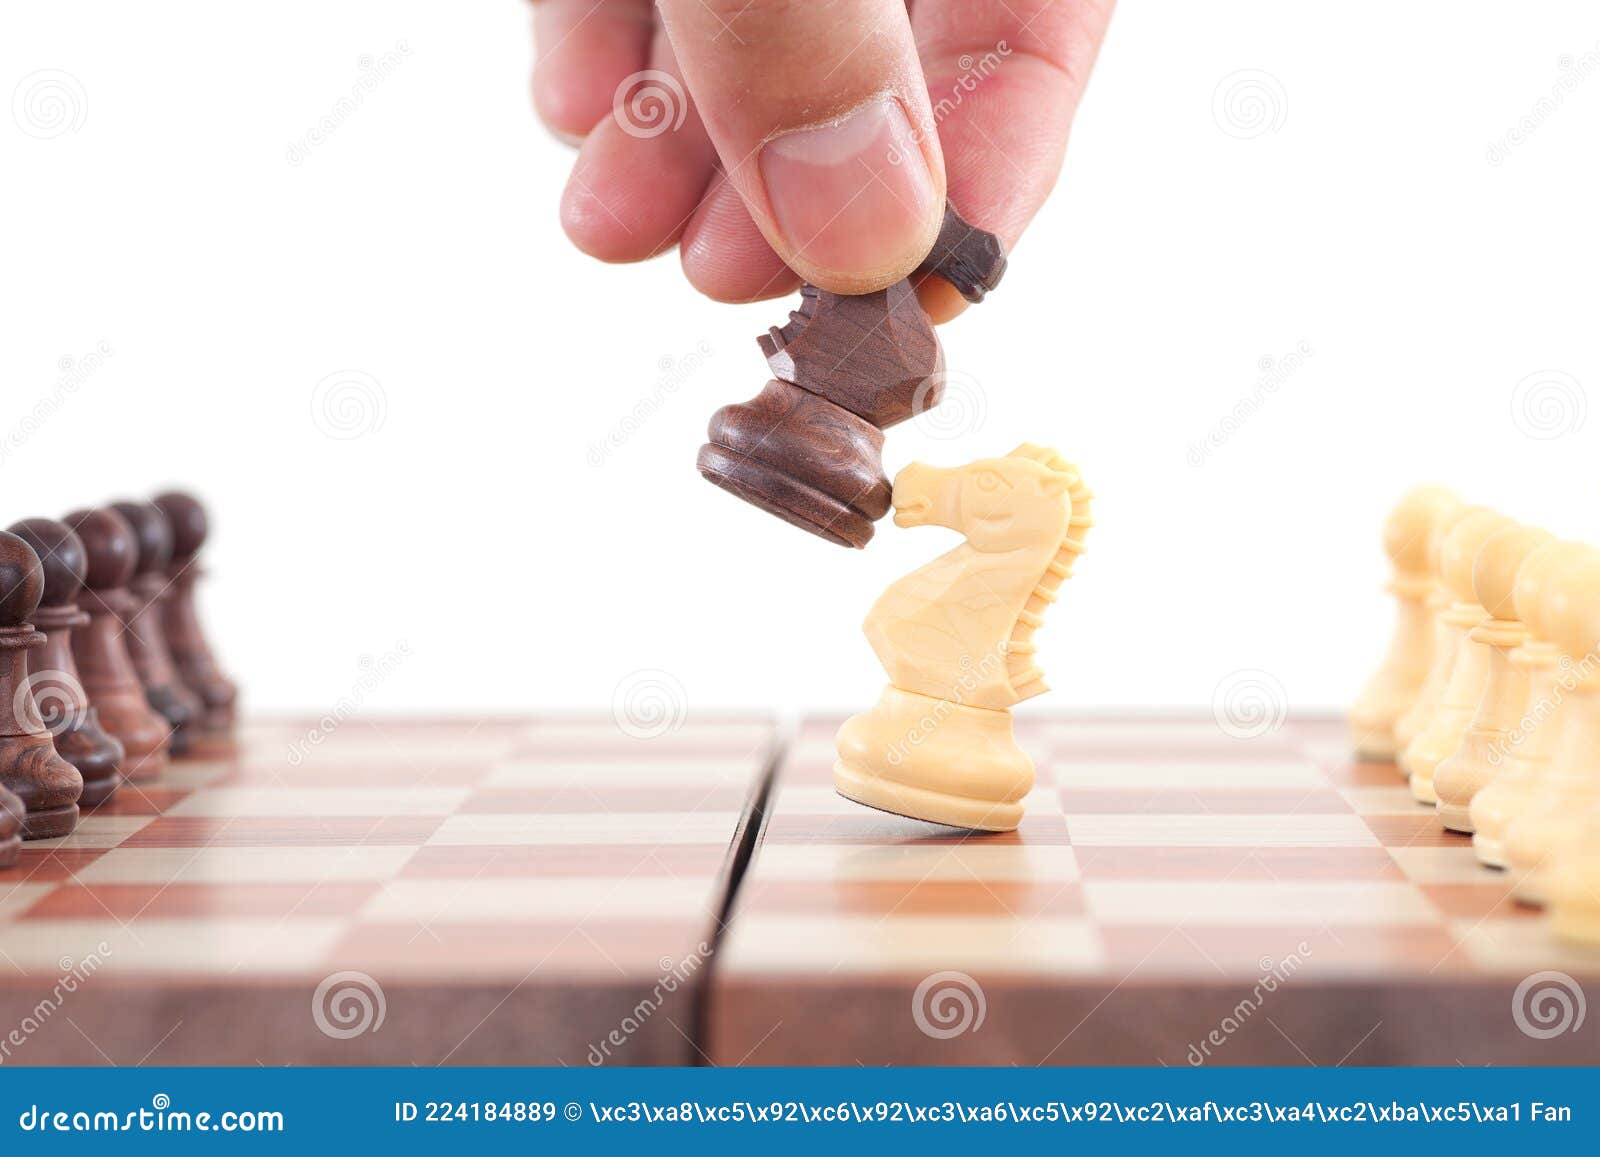 Xadrez: Dos jogadores, um conduz peças brancas, outro, pretas